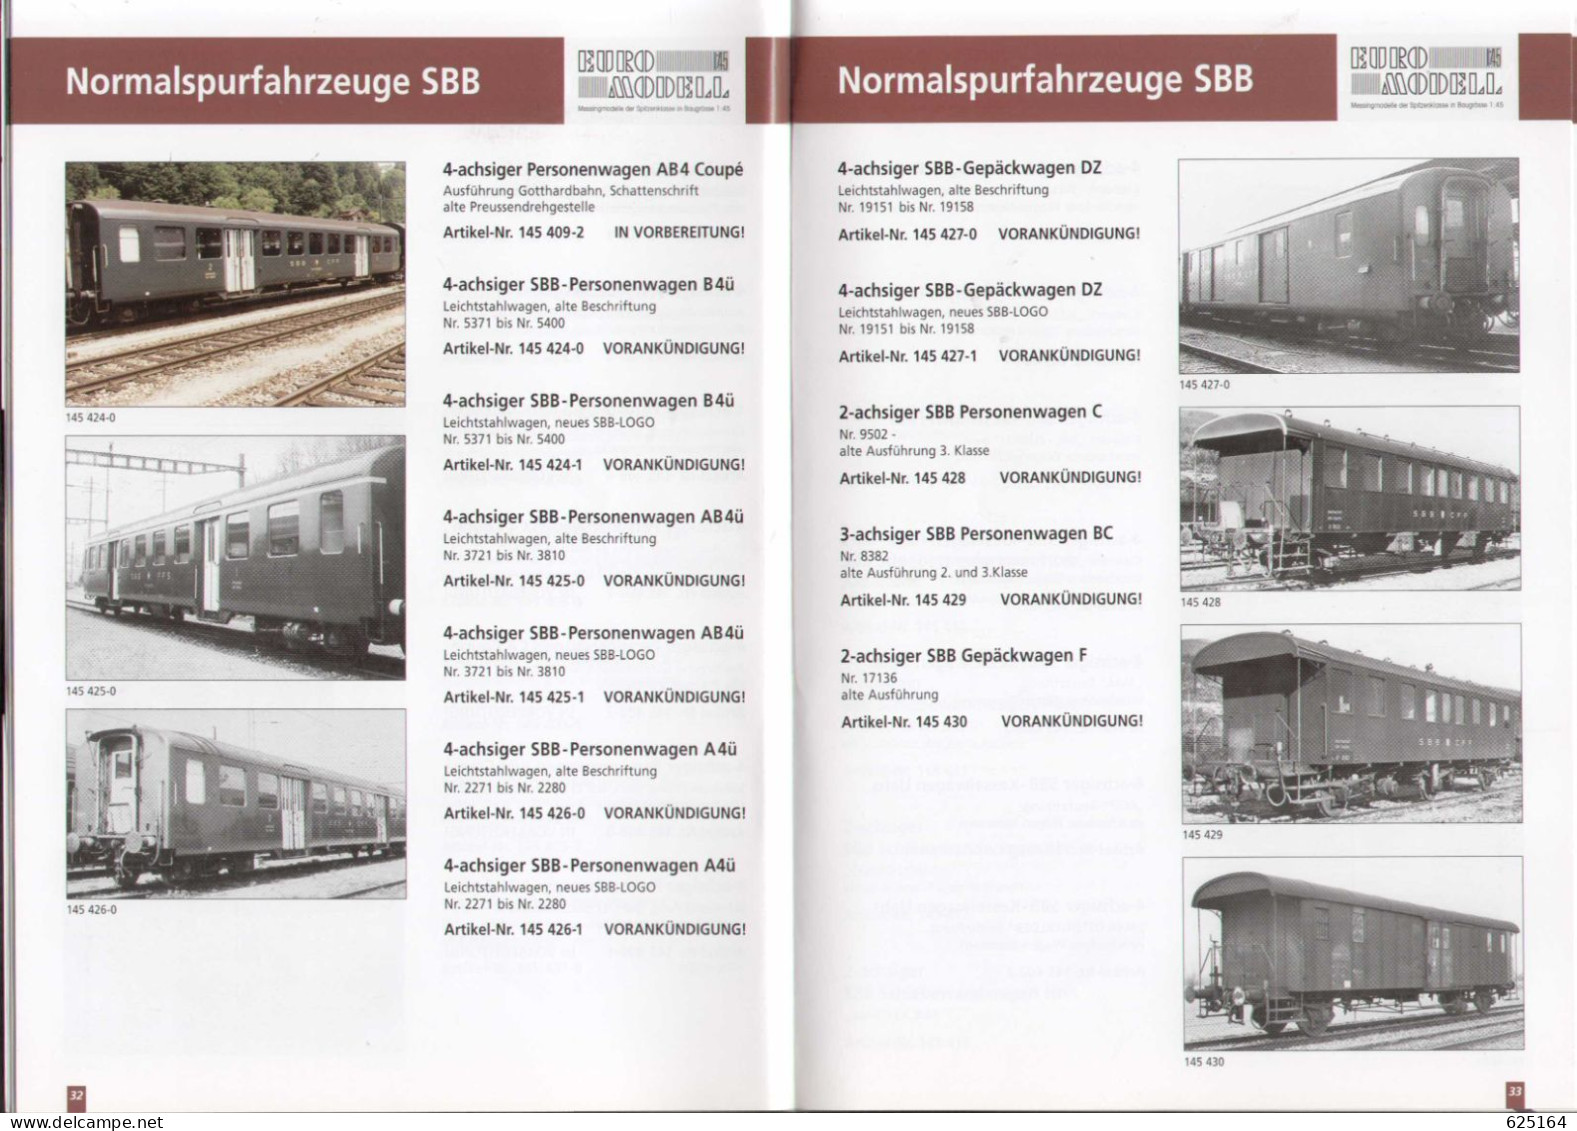 Catalogue MODEL RAIL AG 2010 S EURO MODELL Baugrosse 1: 45 - Messingmodelle - German